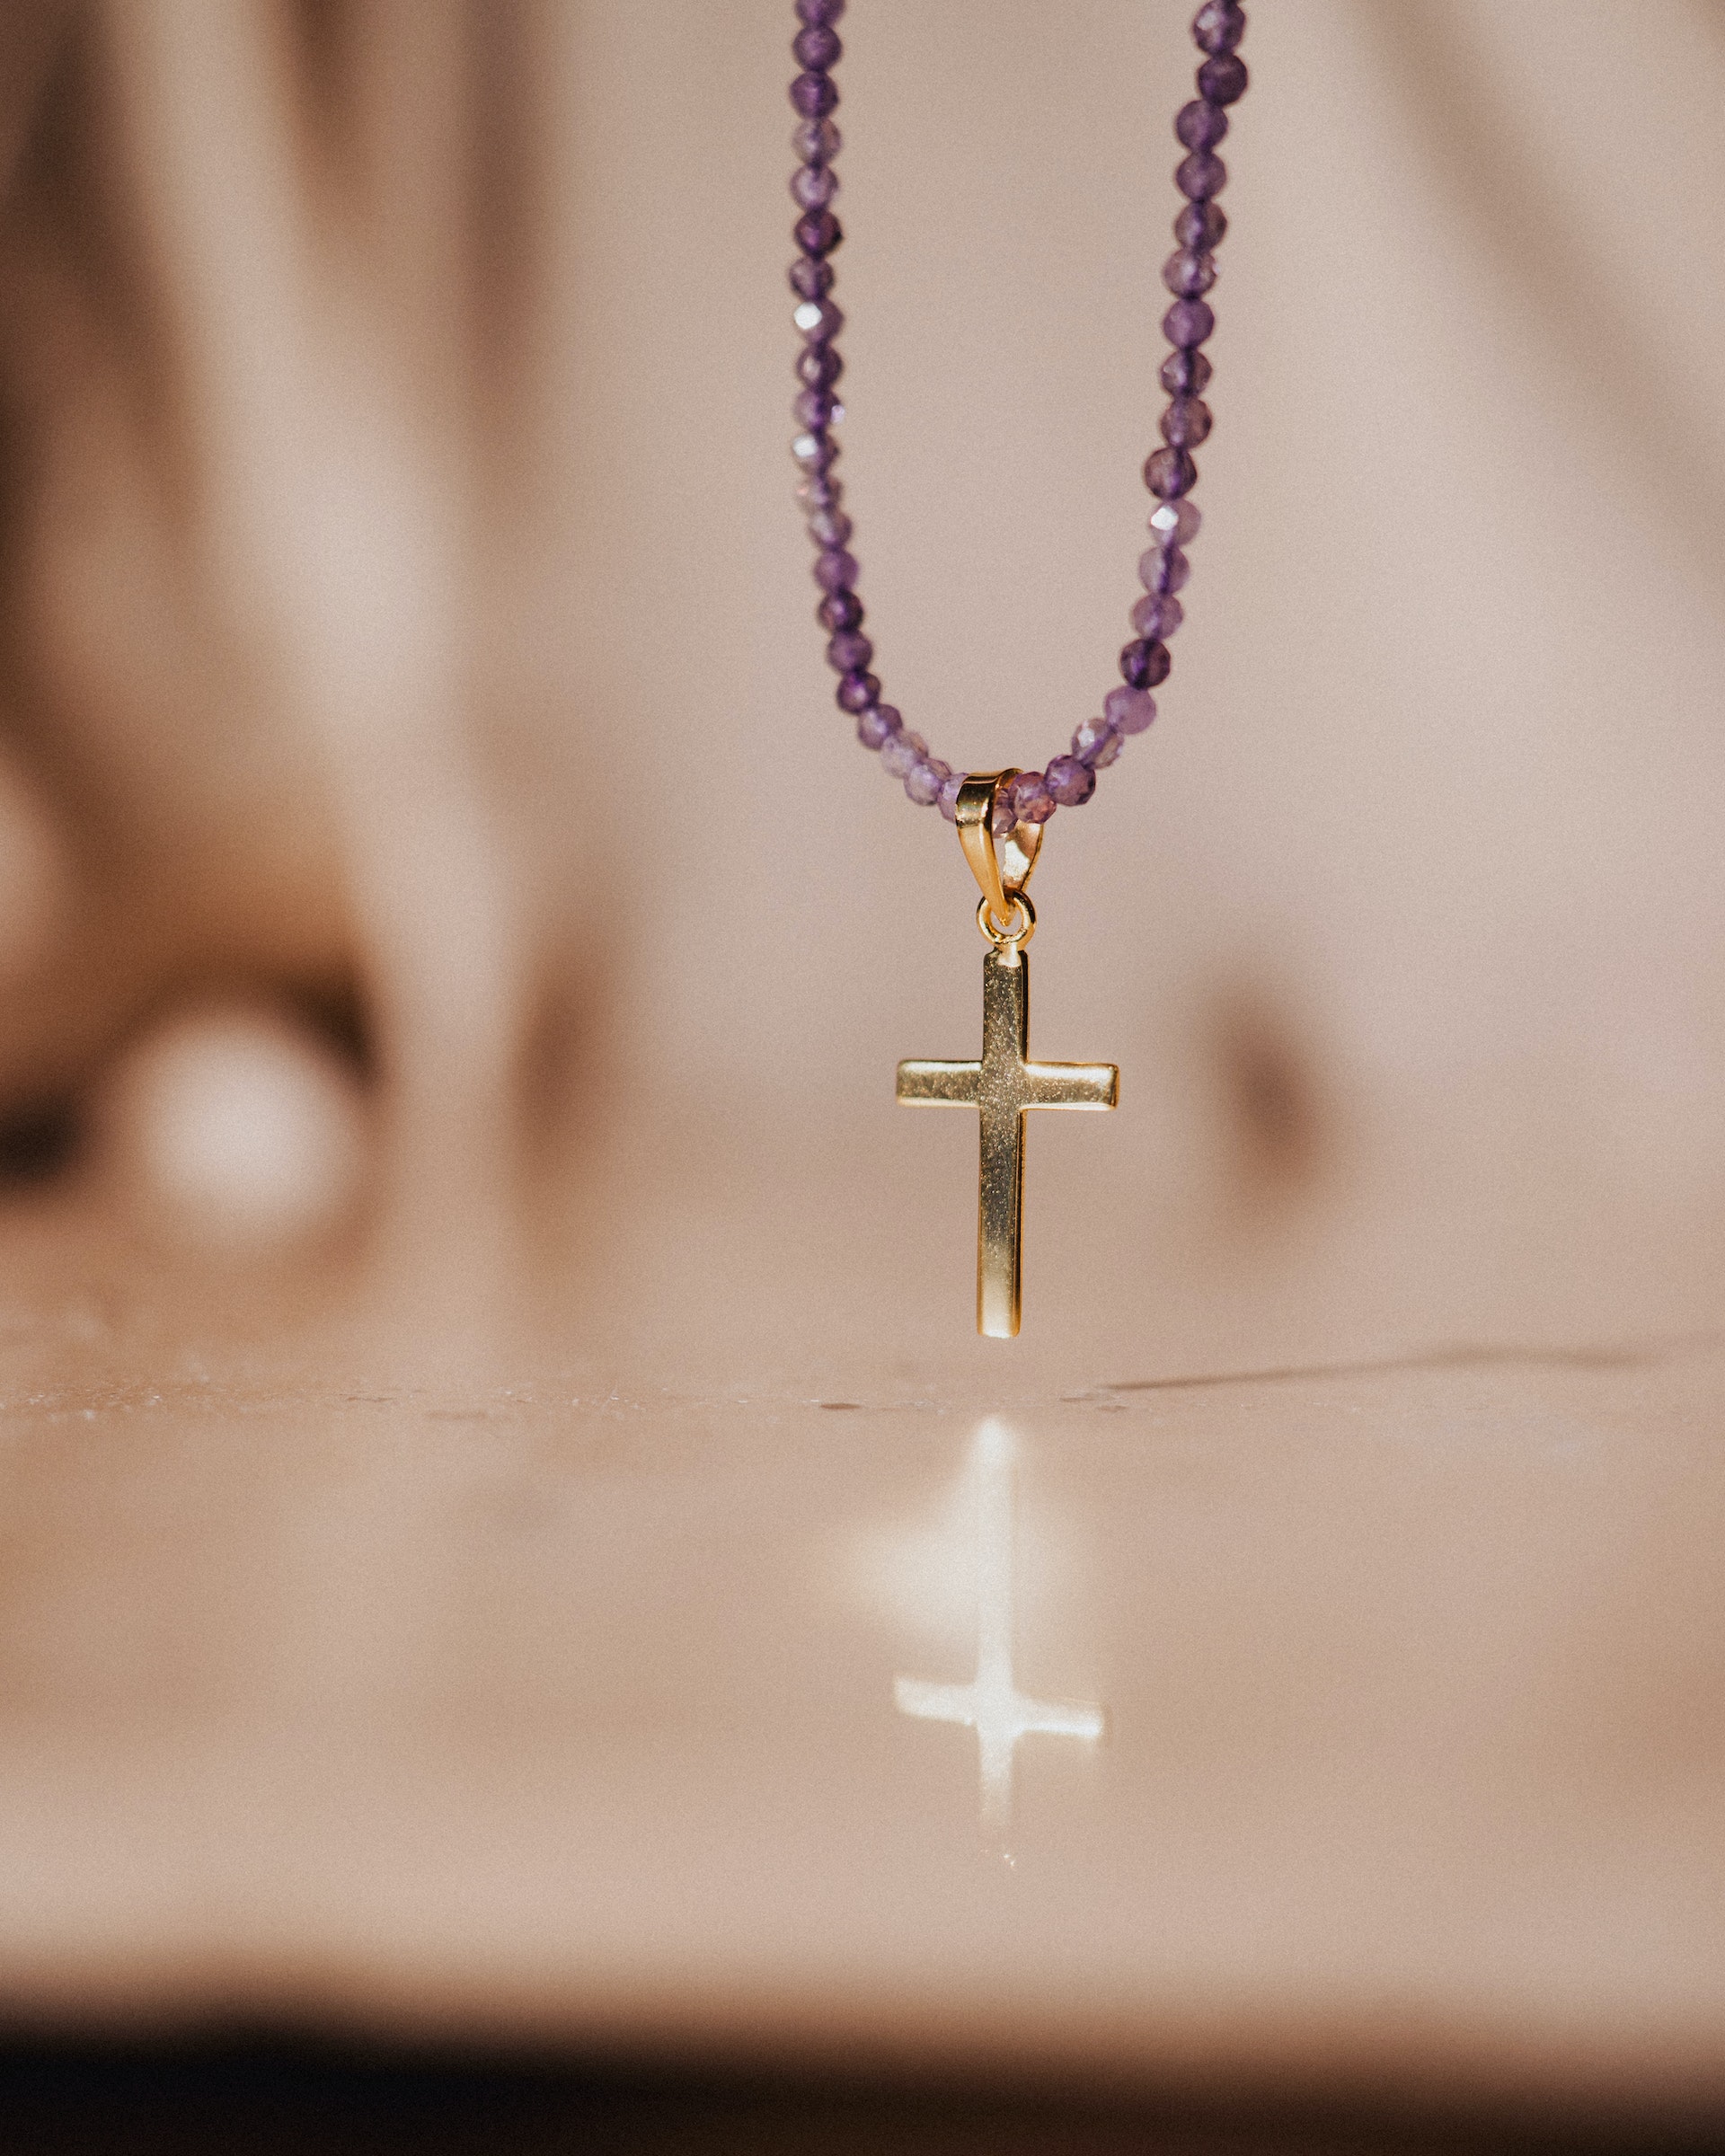 Gros plan d'un collier avec un pendentif en forme de croix | Source : Pexels